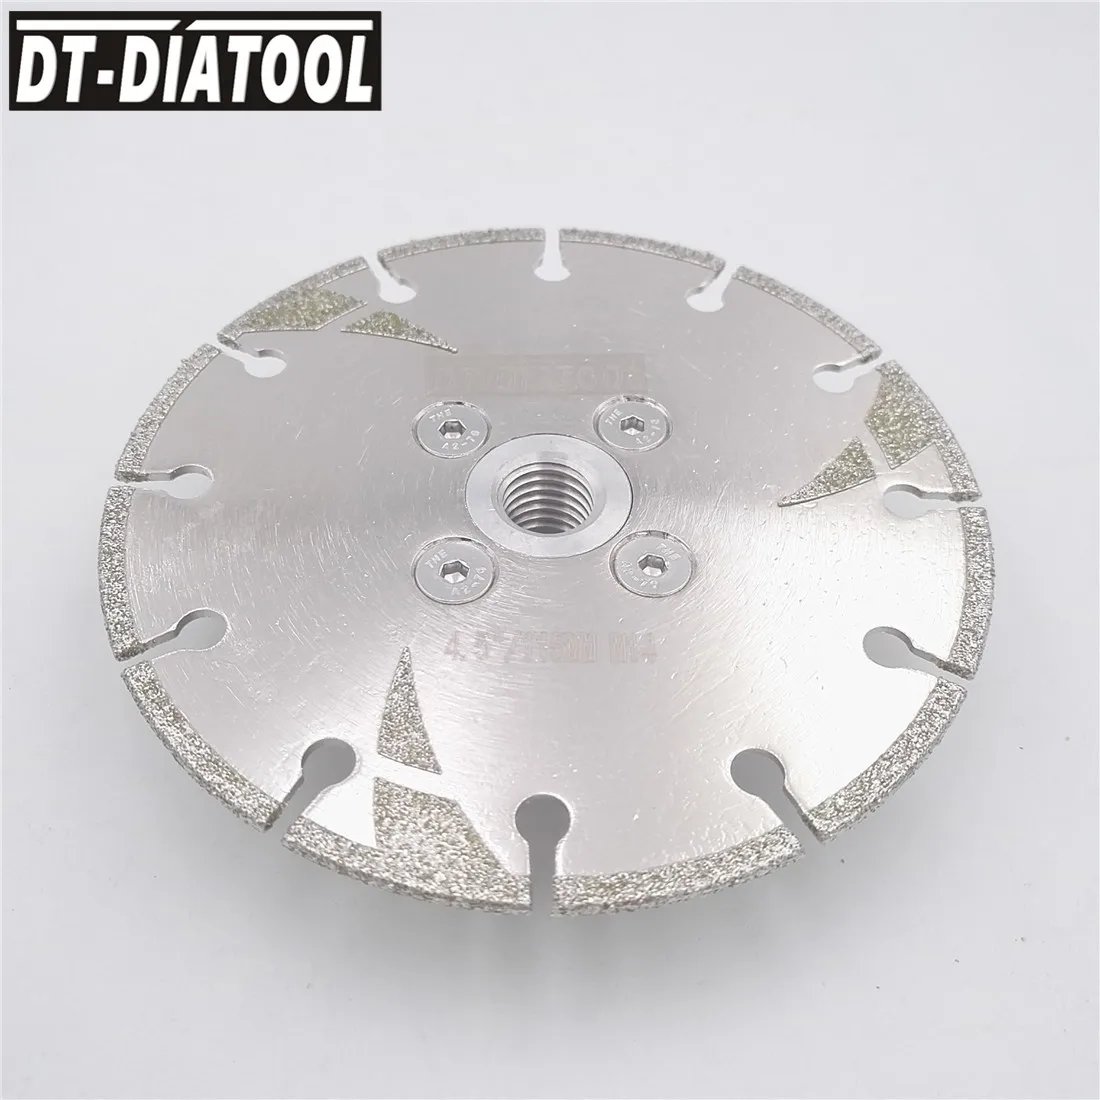 DT-DIATOOL 2 шт диаметр 115 мм Гальванизированный усиленный алмазный режущий диск с резьбой M14 4,5 дюйма пильный диск для плитки мрамора от AliExpress WW